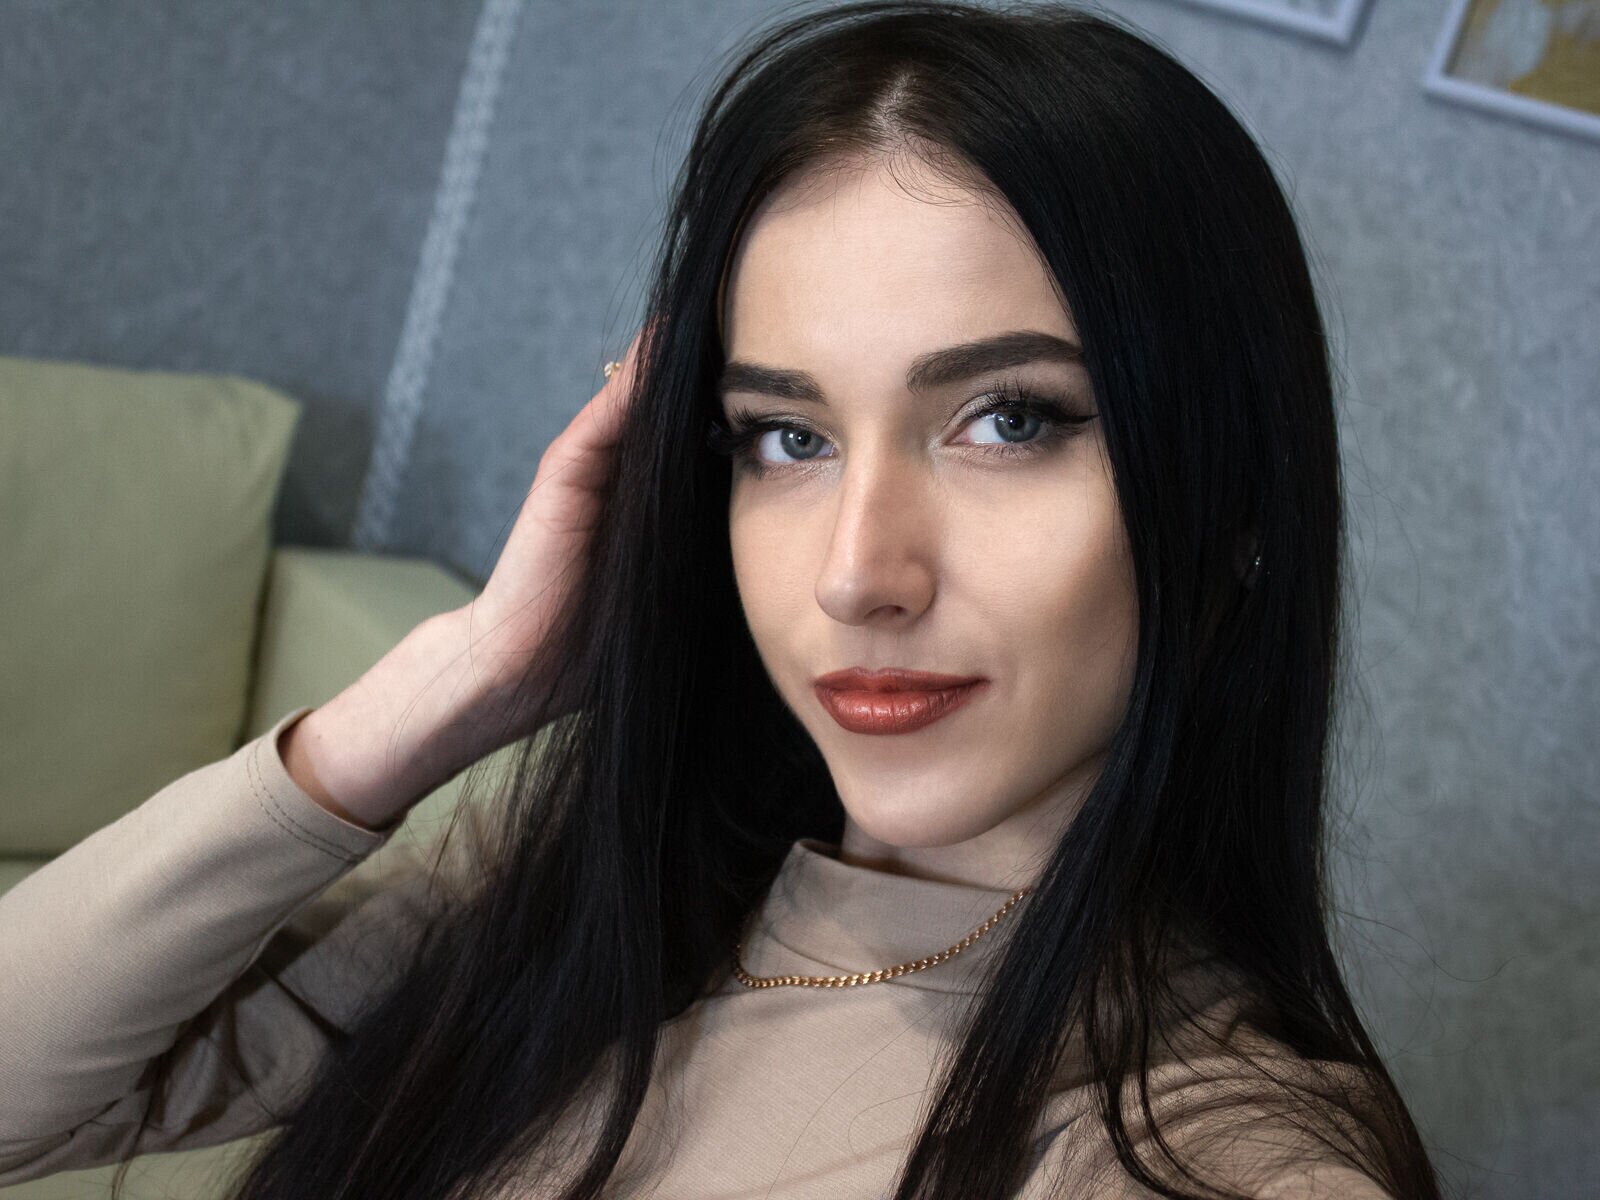 VeronicaRay - Live Sex Cam profile on Livejasmin